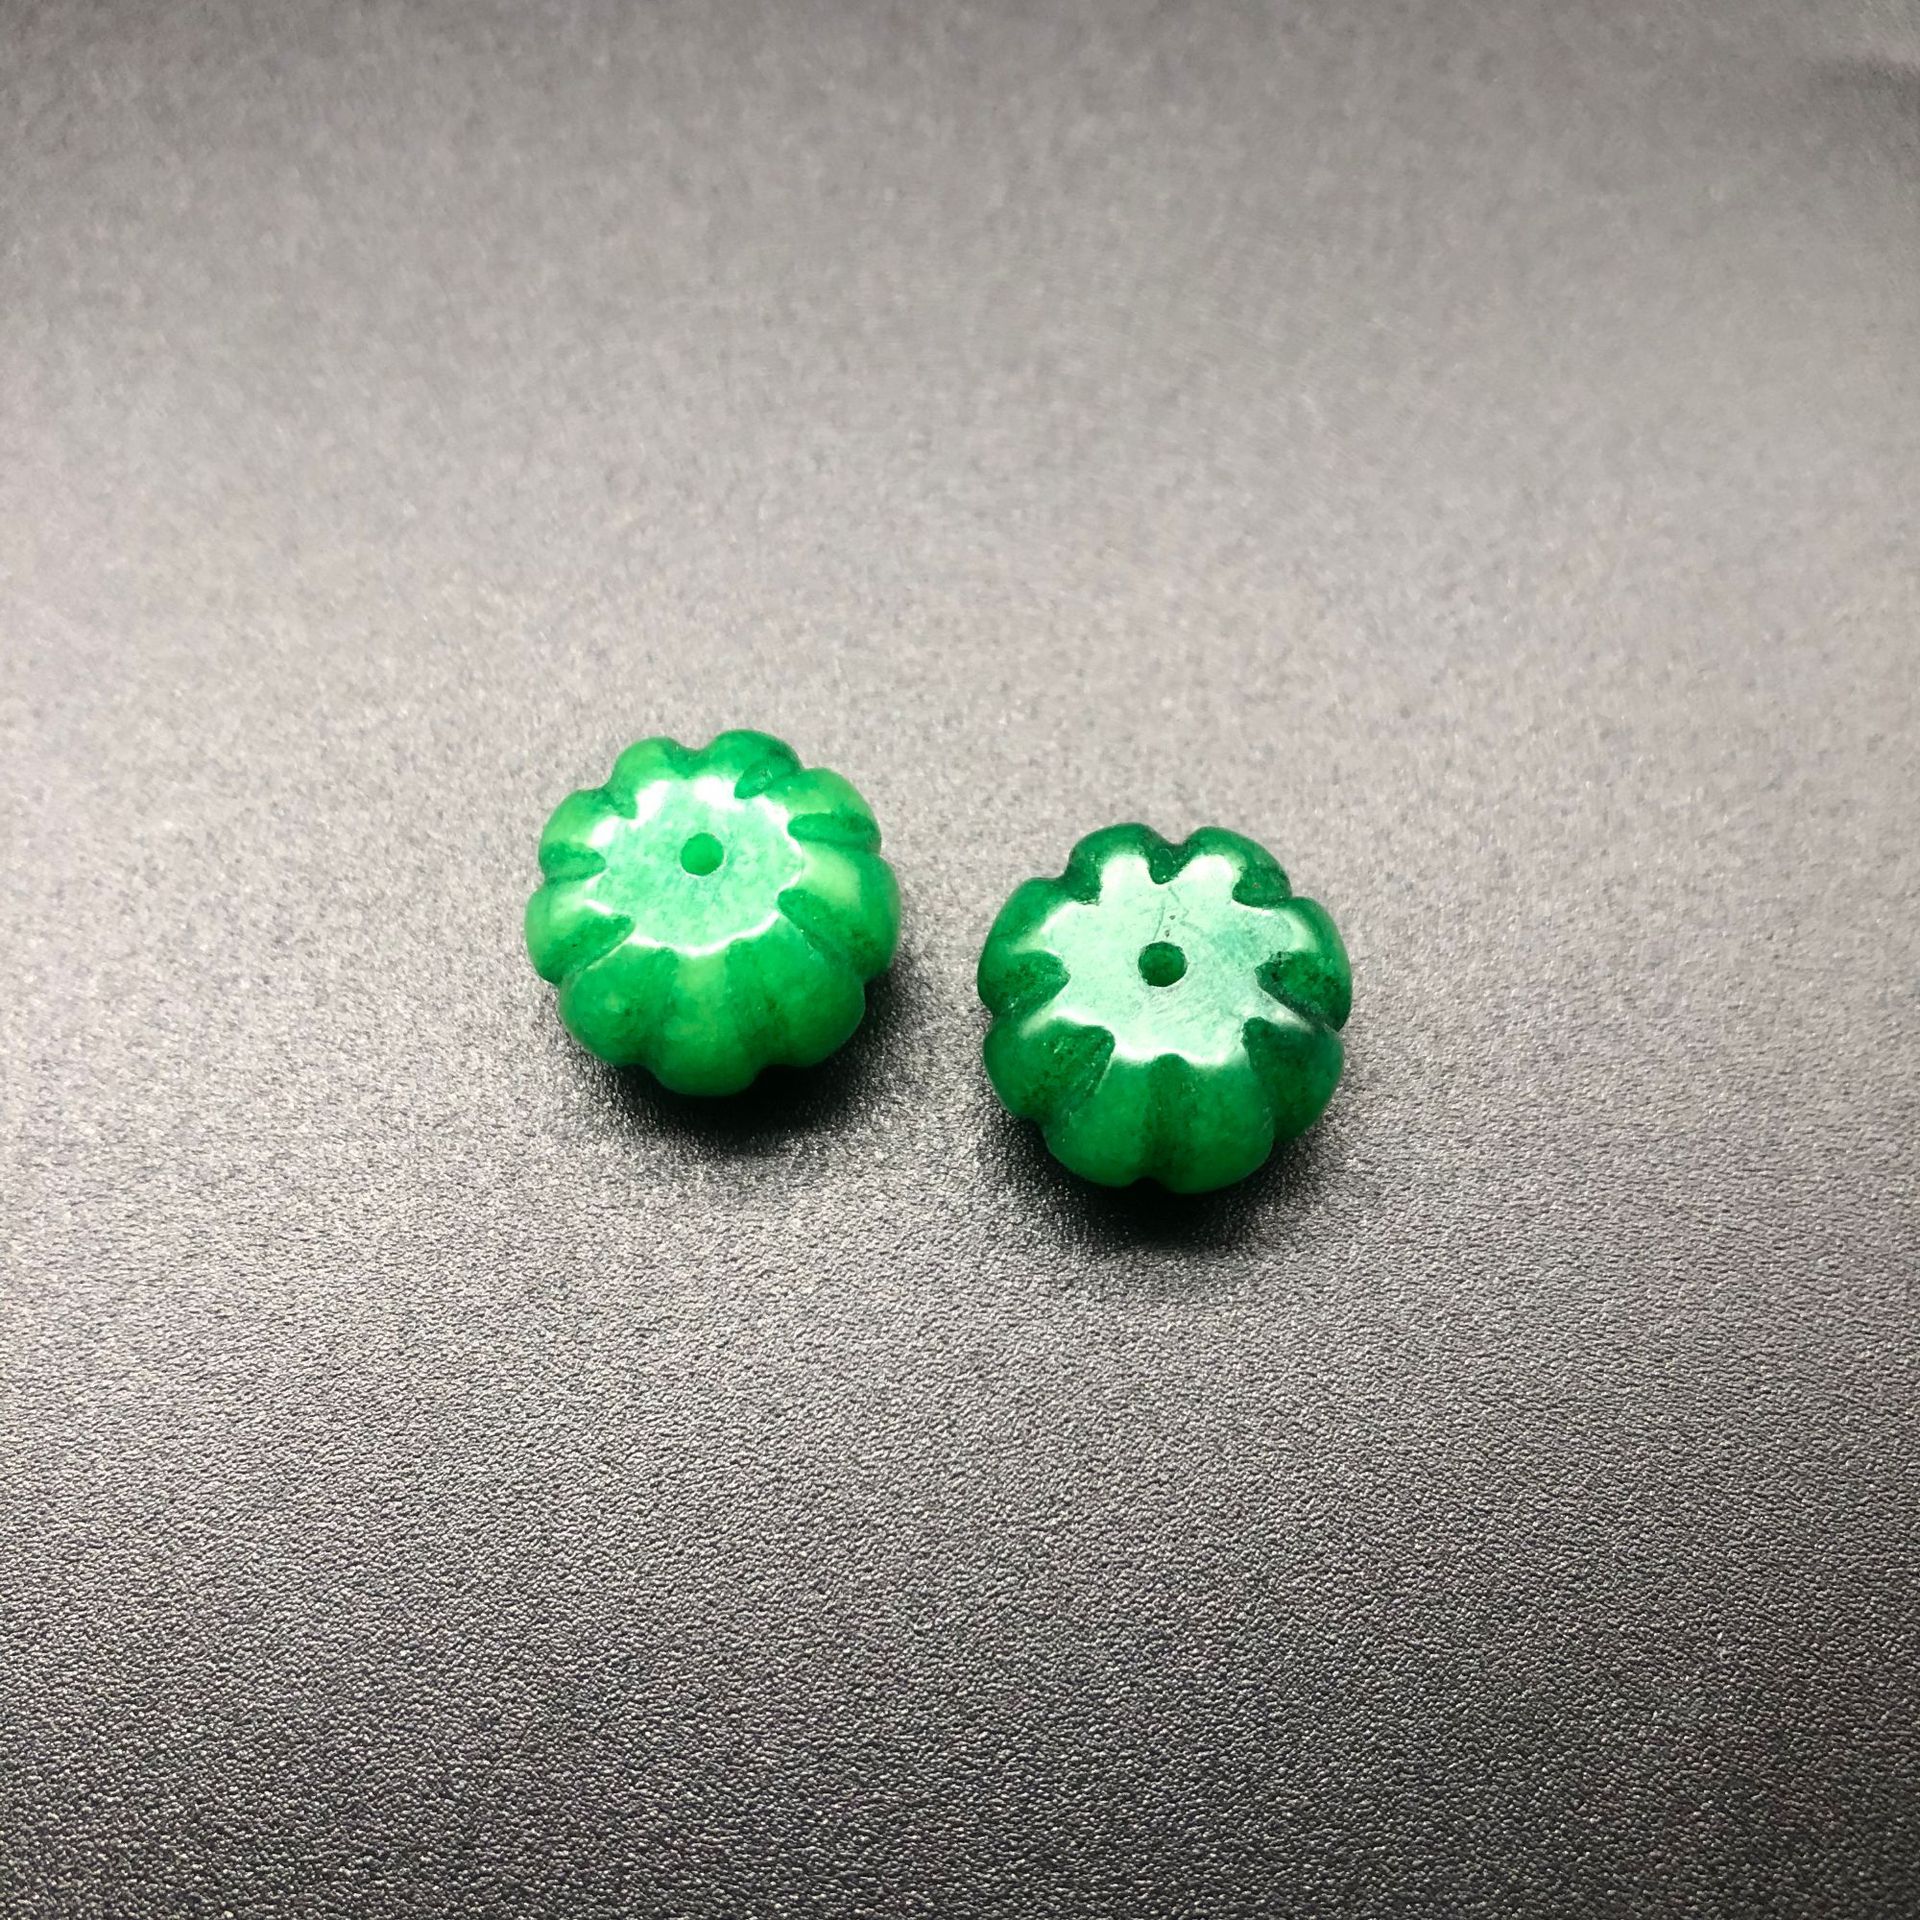 3:verde